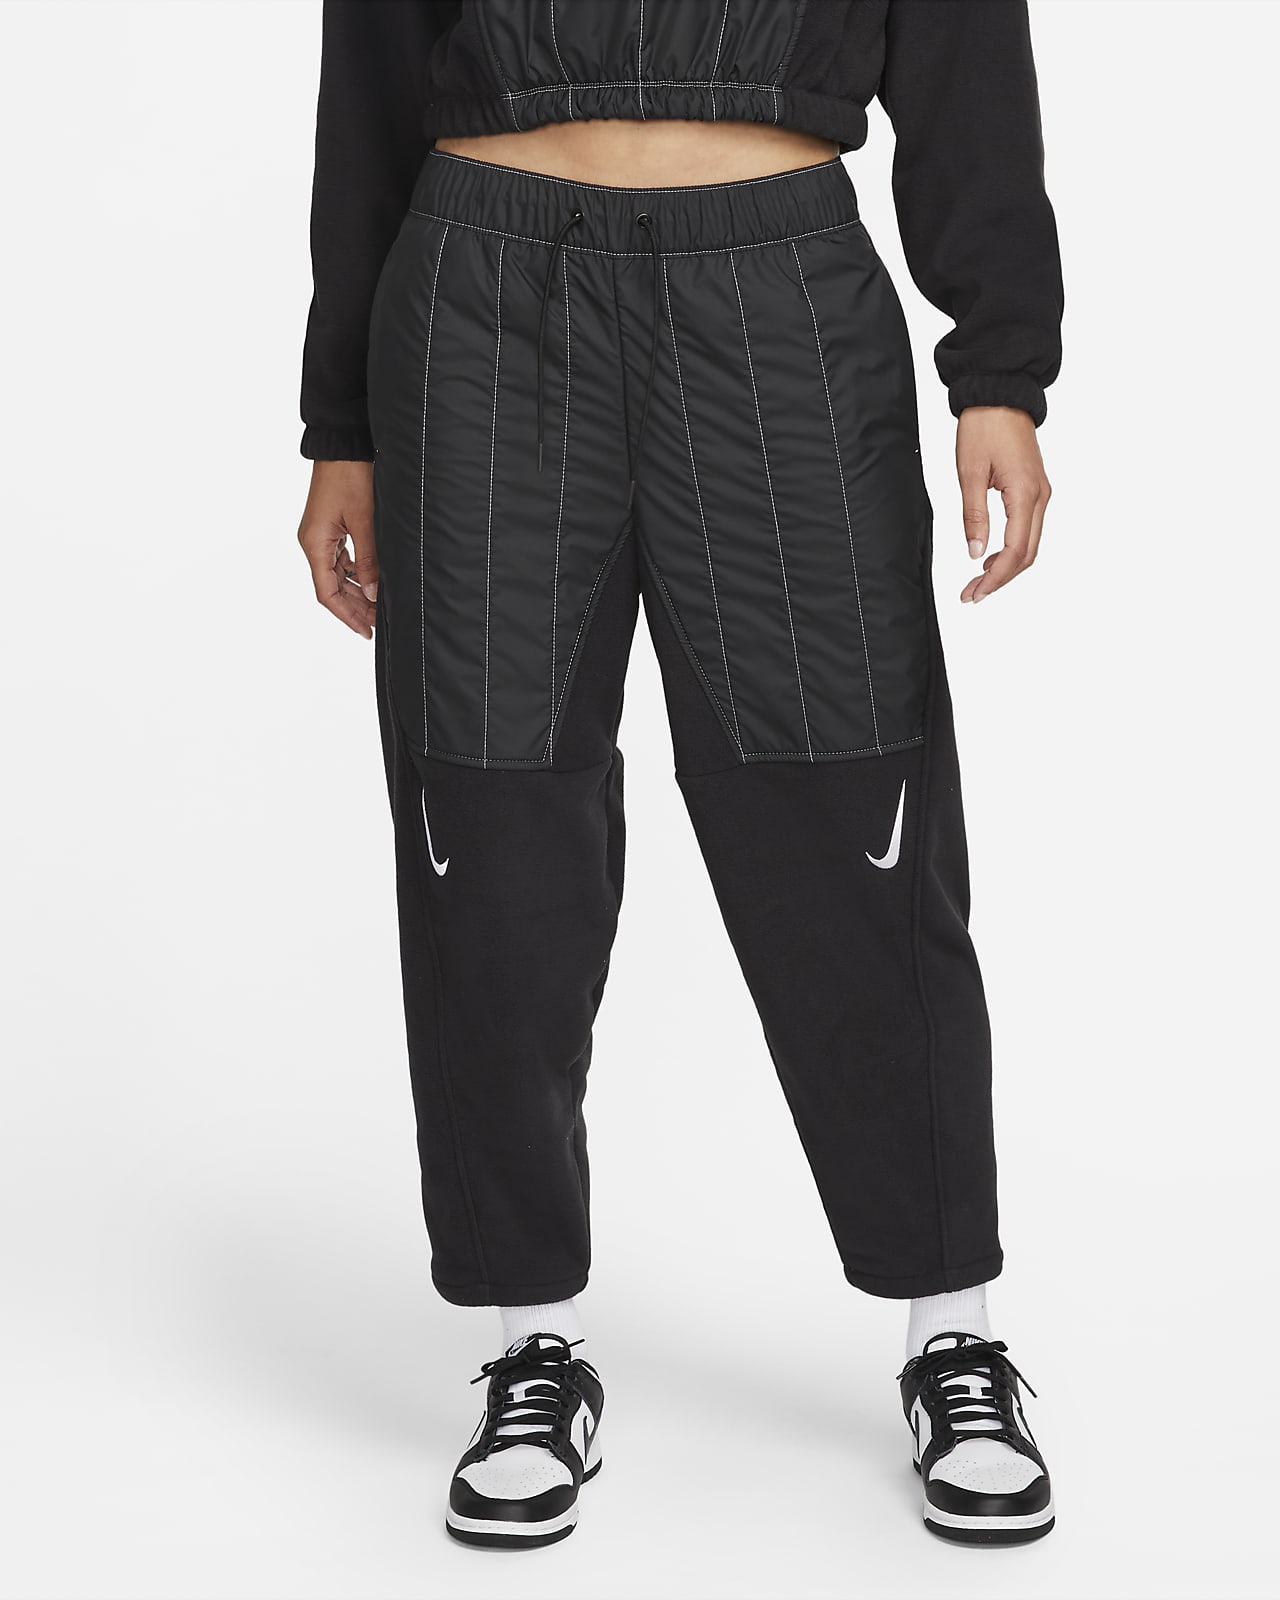 Neerwaarts molen presentatie Nike Sportswear Swoosh Women's Curve Plush Pants. Nike.com